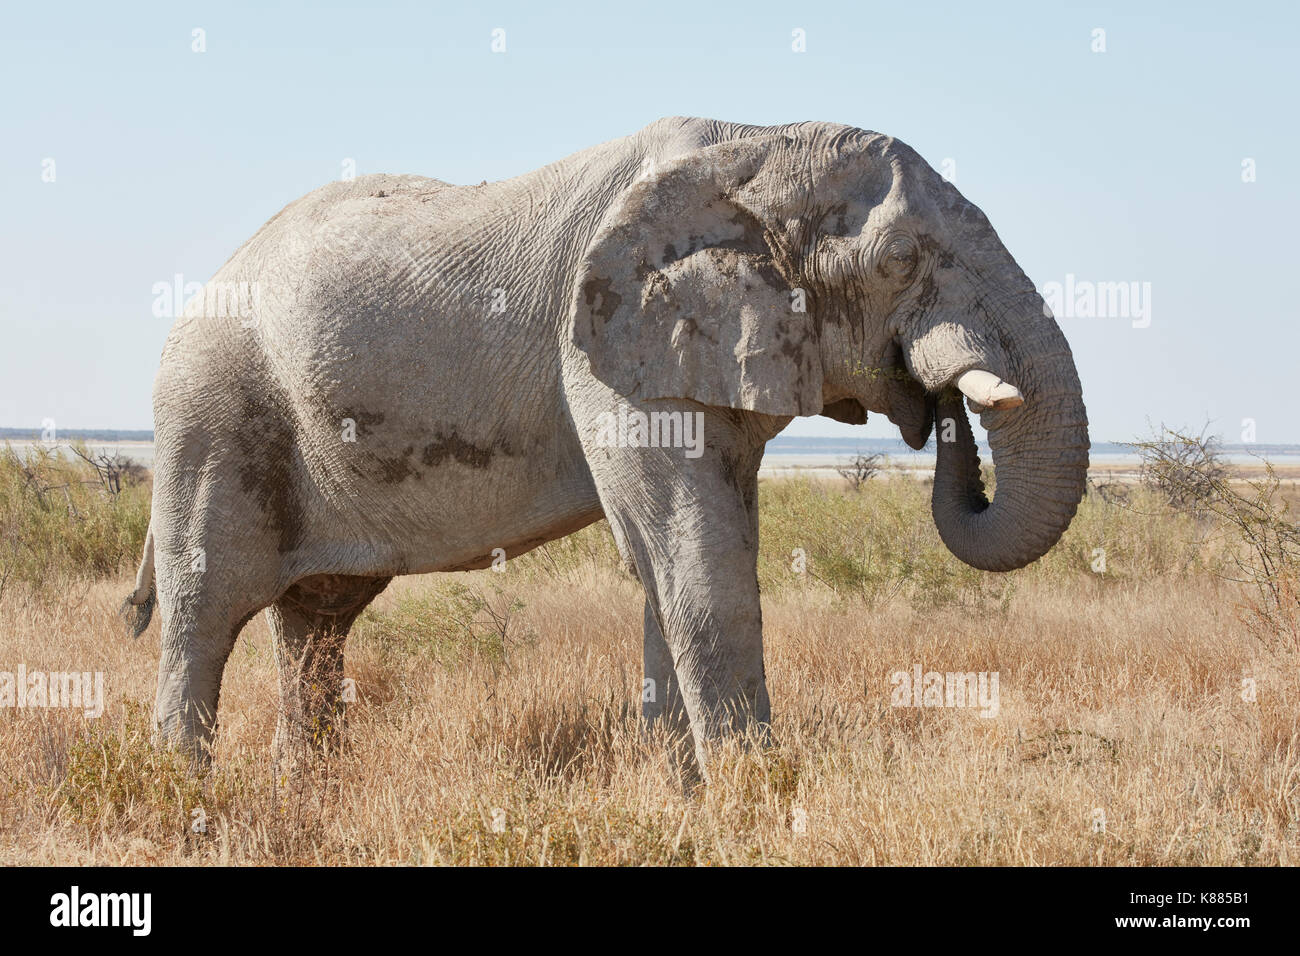 Ein Afrikanischer Elefant, Loxodonta africana, stehend im Grünland wickeln seinen Rüssel zu füttern. Stockfoto